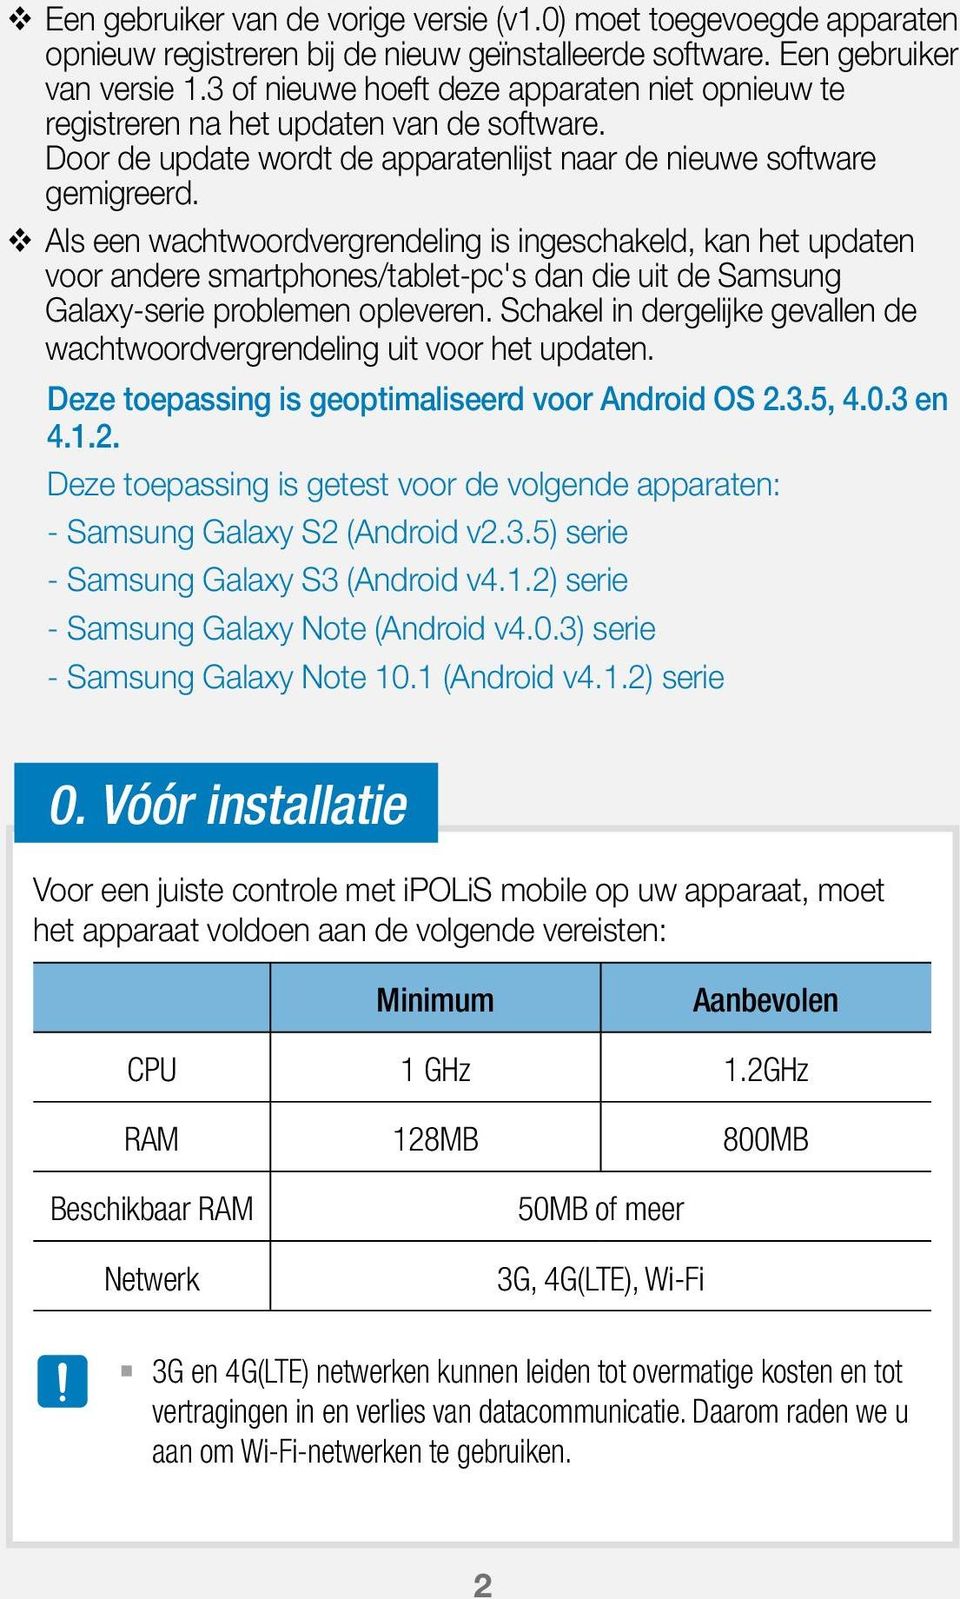 Als een wachtwoordvergrendeling is ingeschakeld, kan het updaten voor andere smartphones/tablet-pc's dan die uit de Samsung Galaxy-serie problemen opleveren.